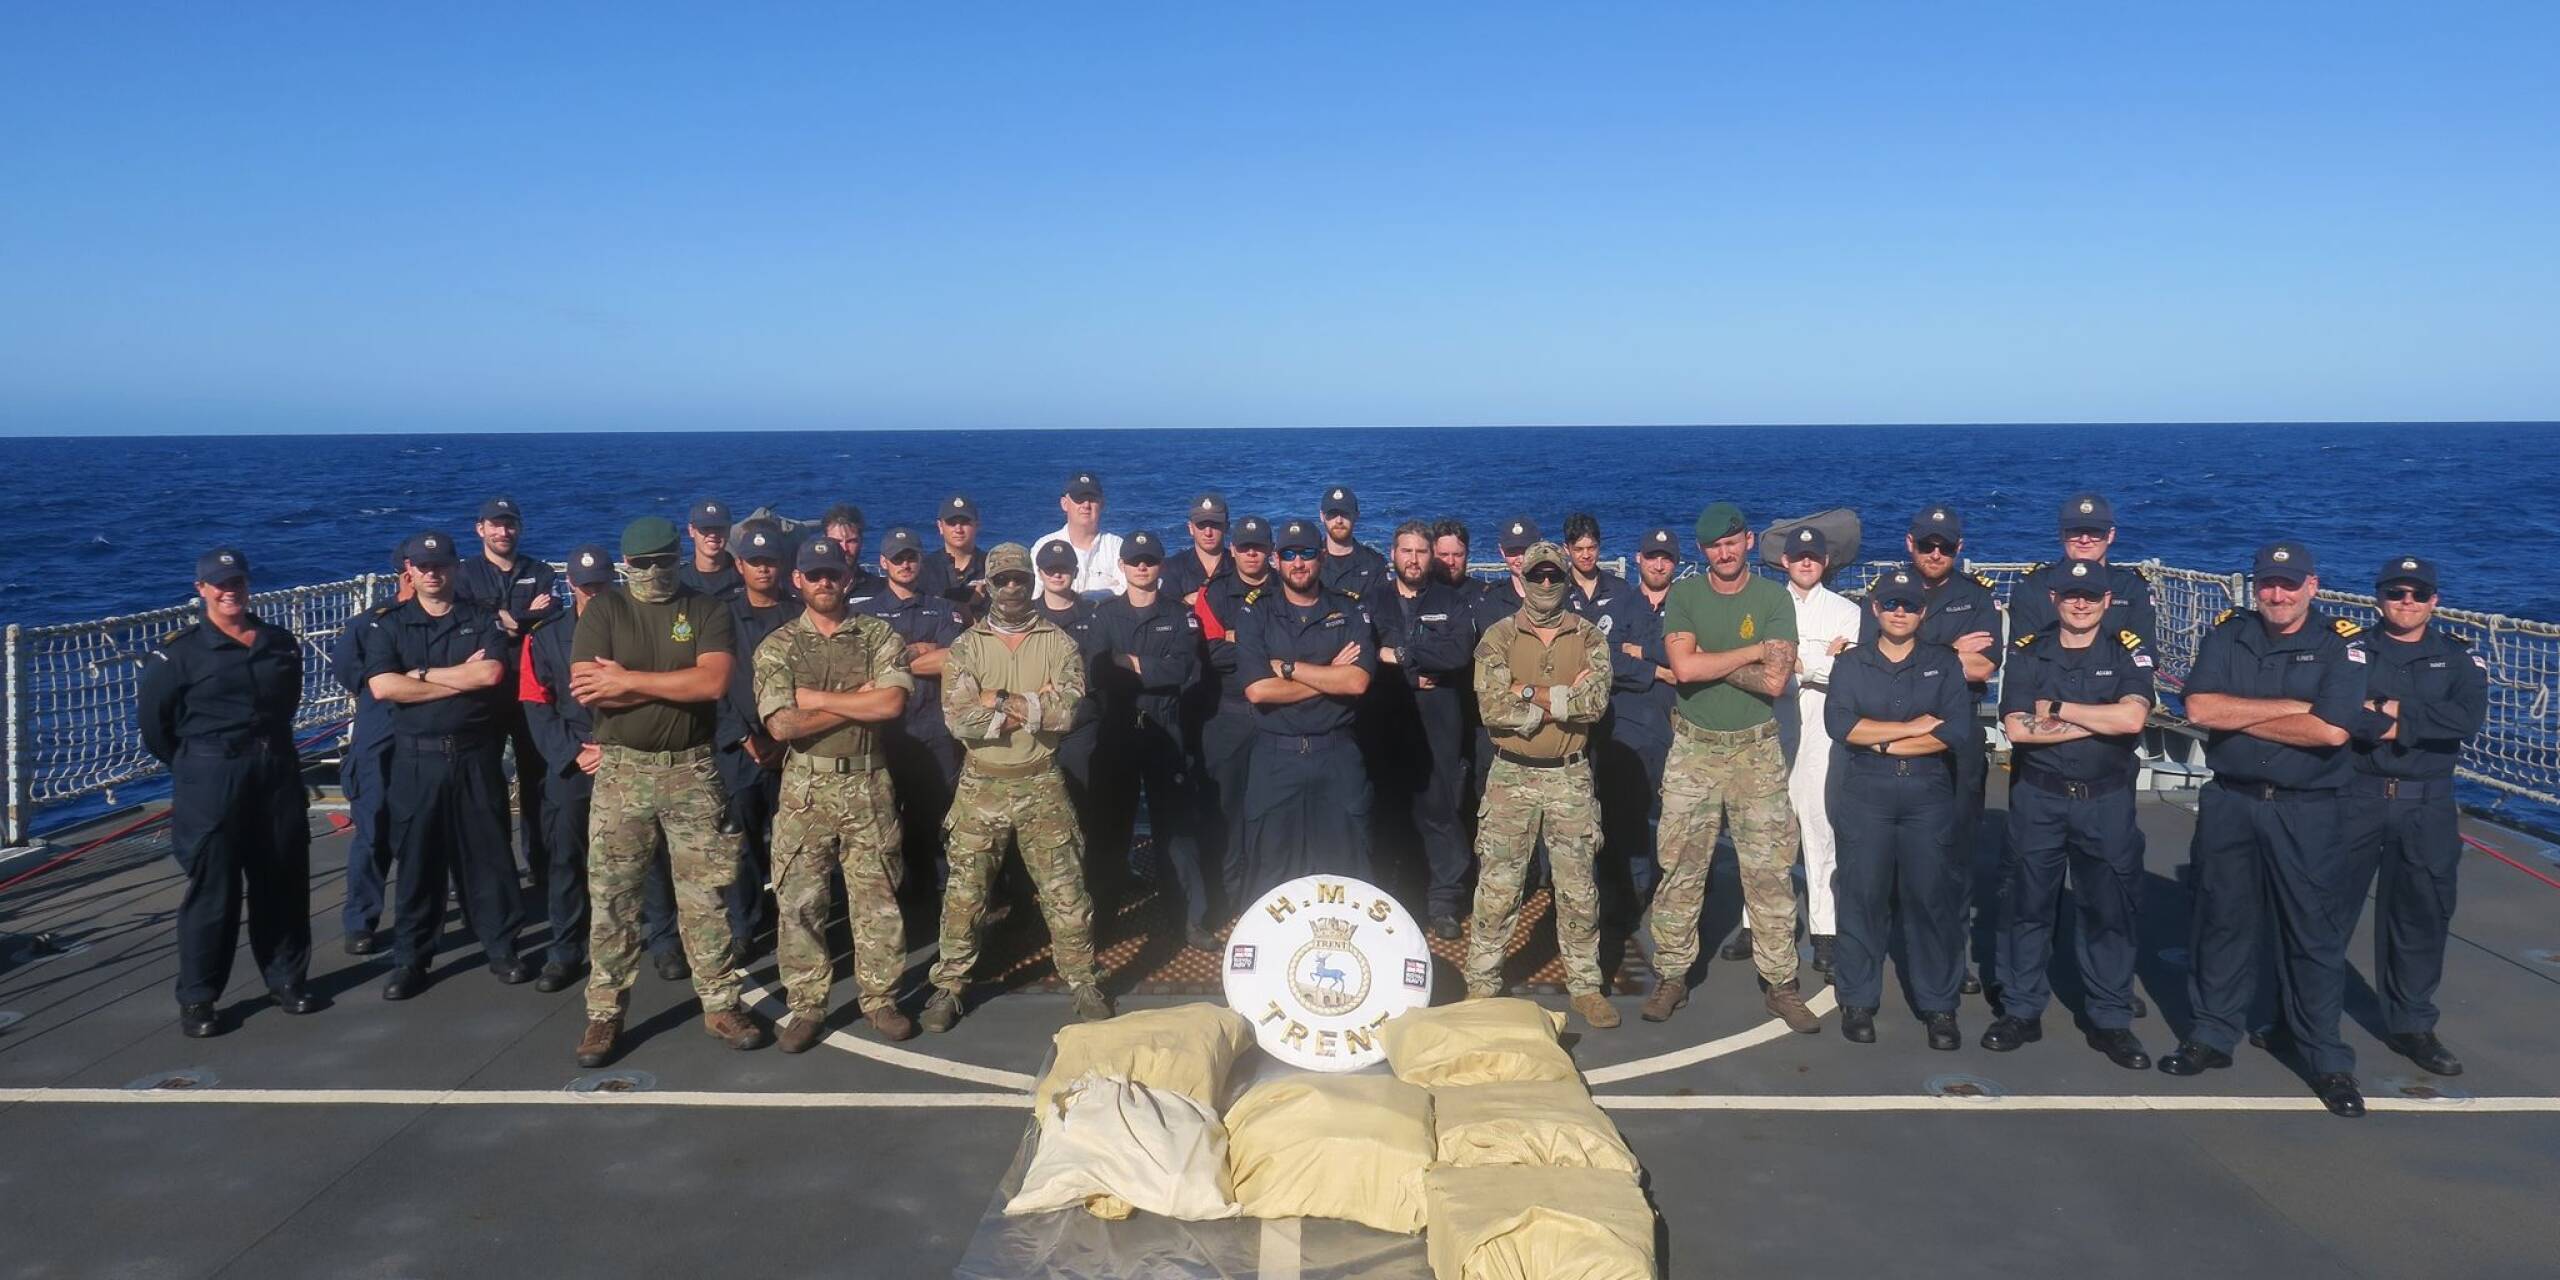 Die britische Marine hat gemeinsam mit der US-Küstenwache in der Karibik Drogen im Wert von fast 20 Millionen Euro sichergestellt. Die Belegschaft konnte so 200 Kilogramm Kokain und weitere Drogen beschlagnahmen.